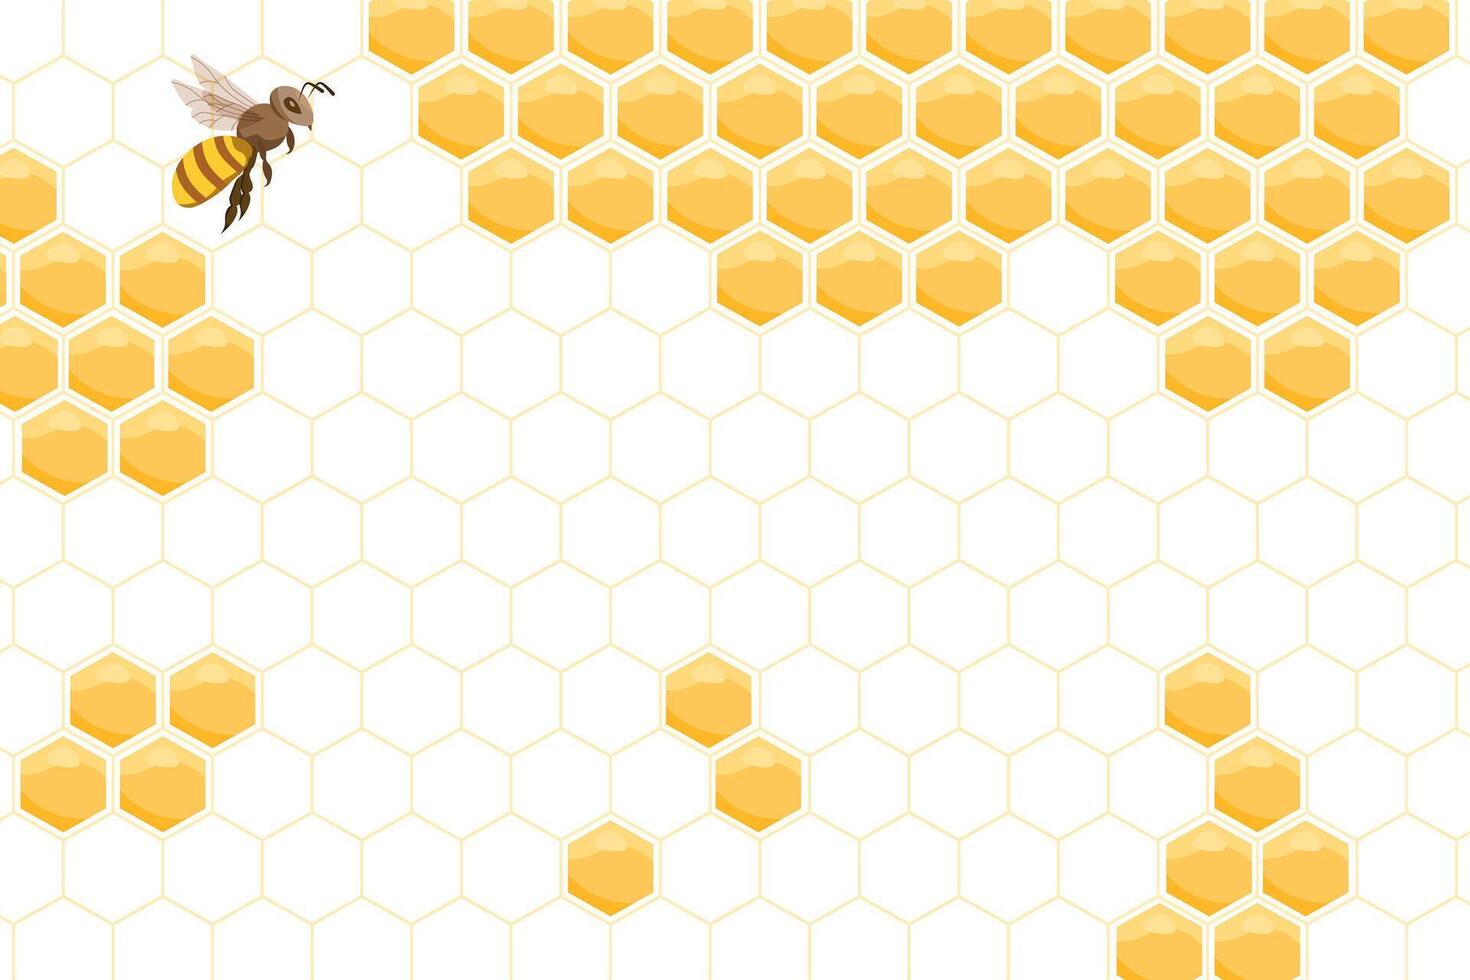 bi bikupa, abstrakt bikakor och bin på en vit bakgrund. illustration. vektor